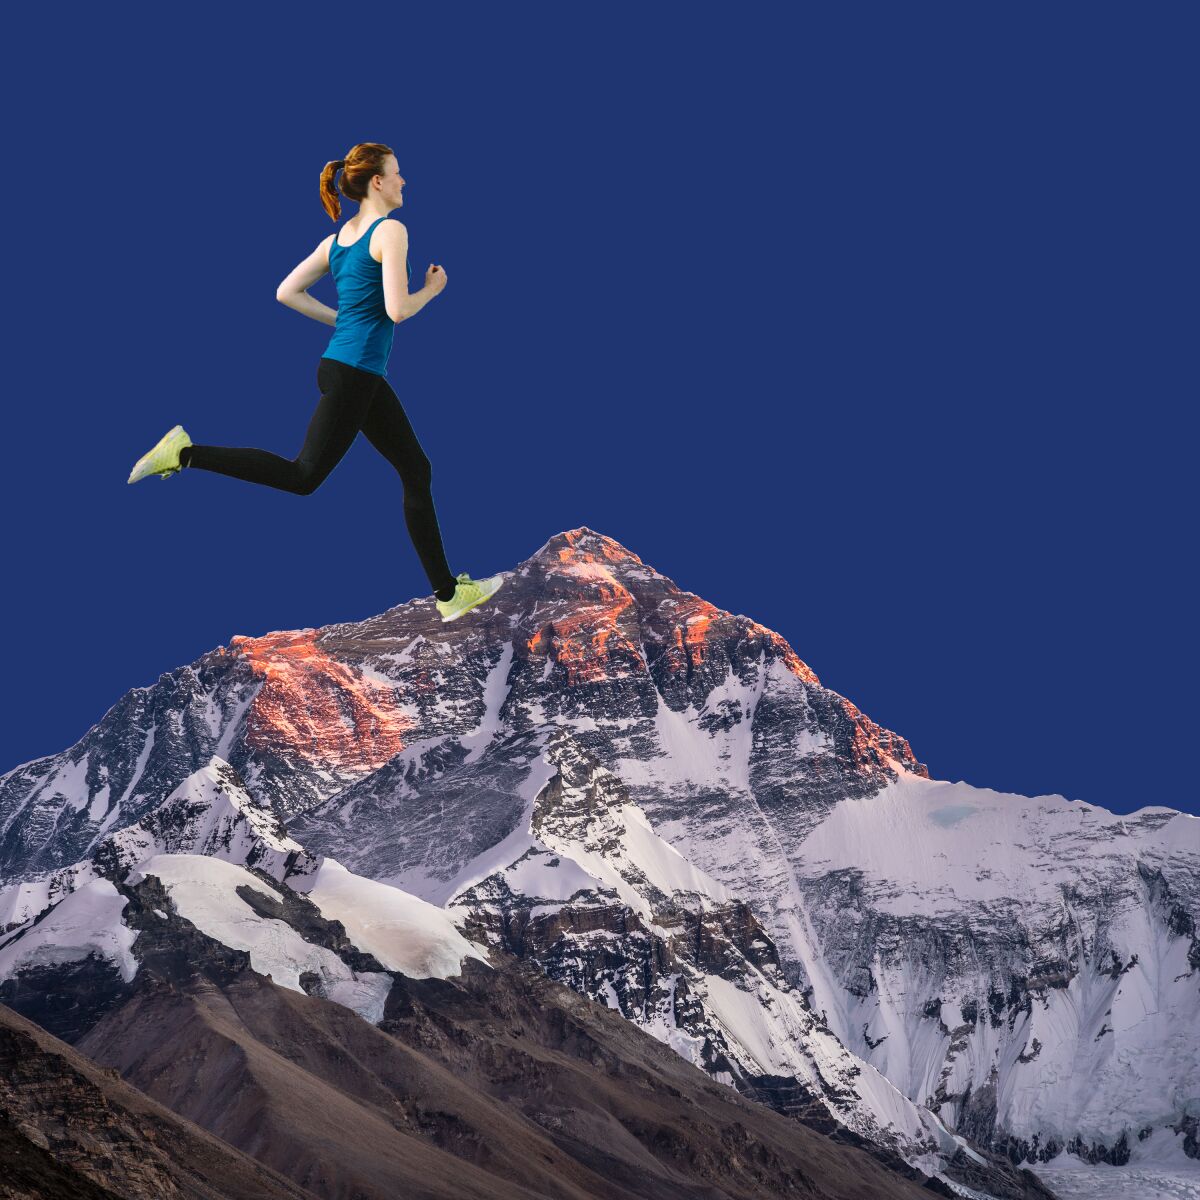 An illustration of a female runner on Mt. Everest.